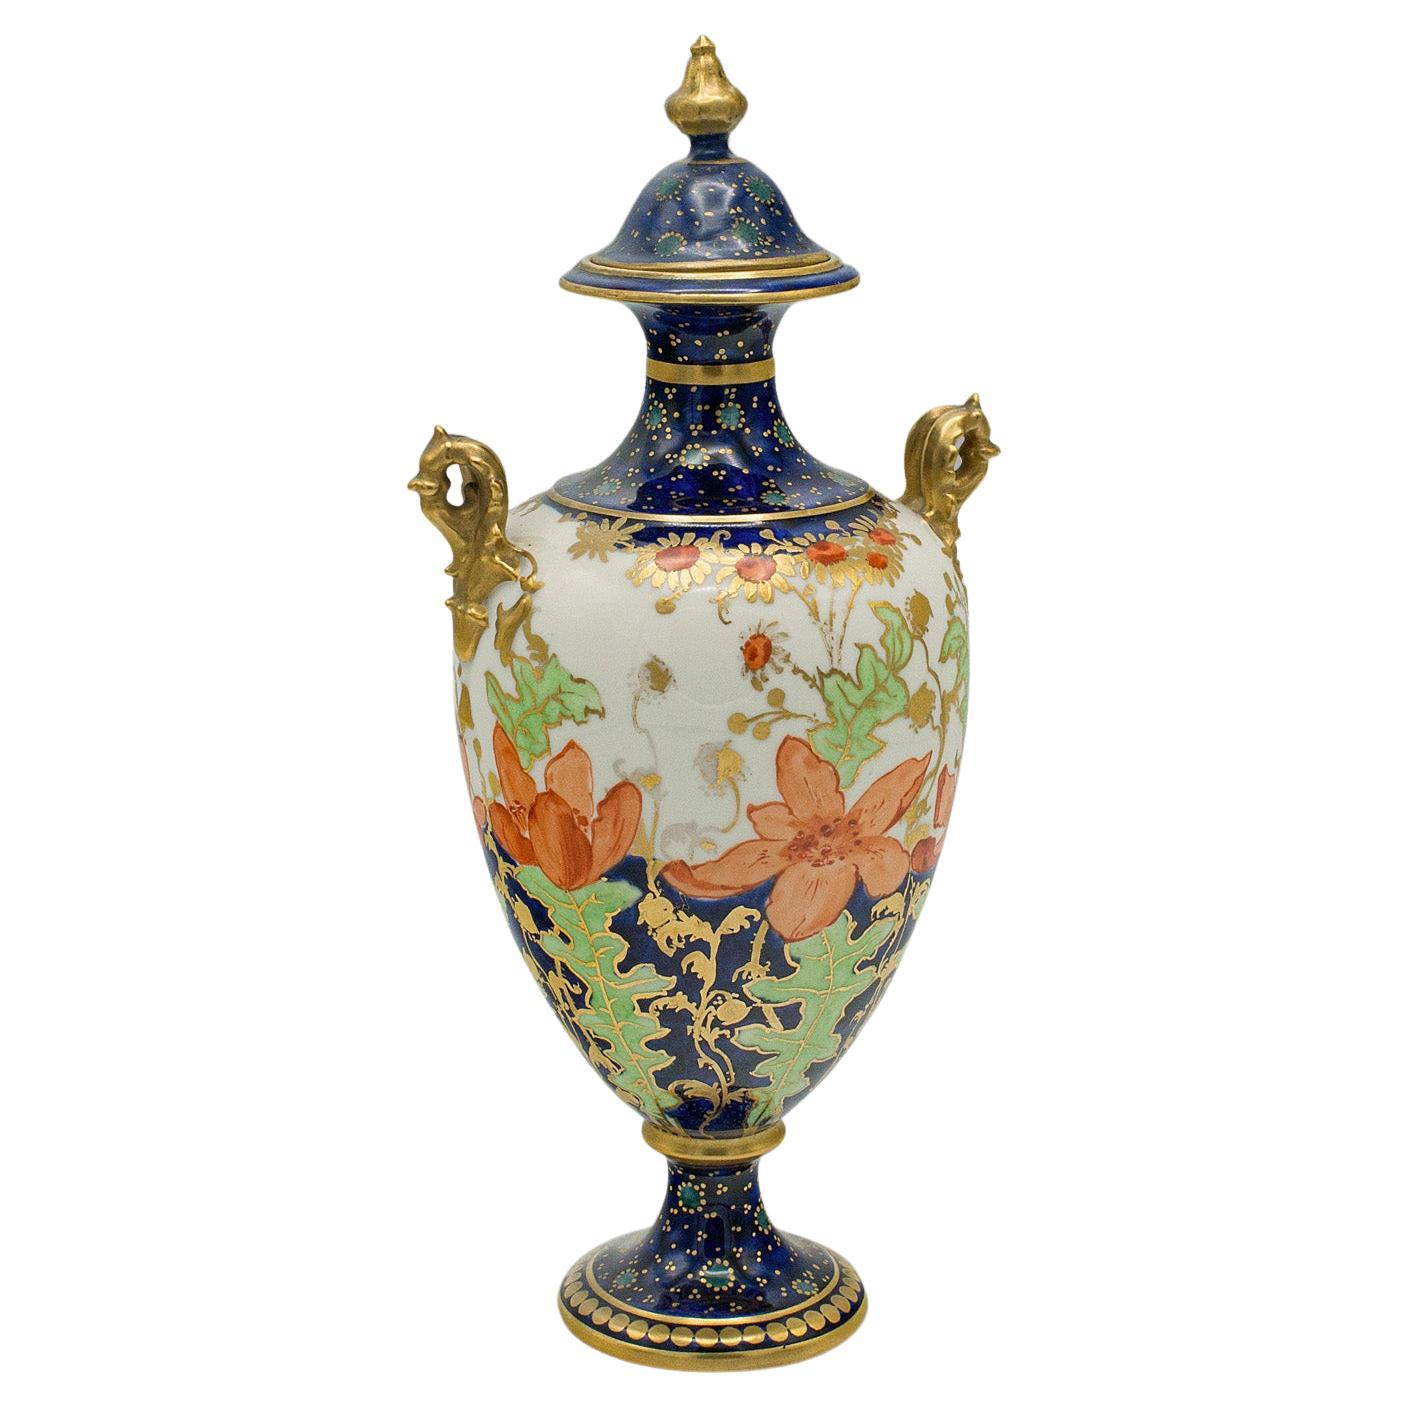 Petite urne balustre ancienne anglaise, céramique, vase décoratif, victorien